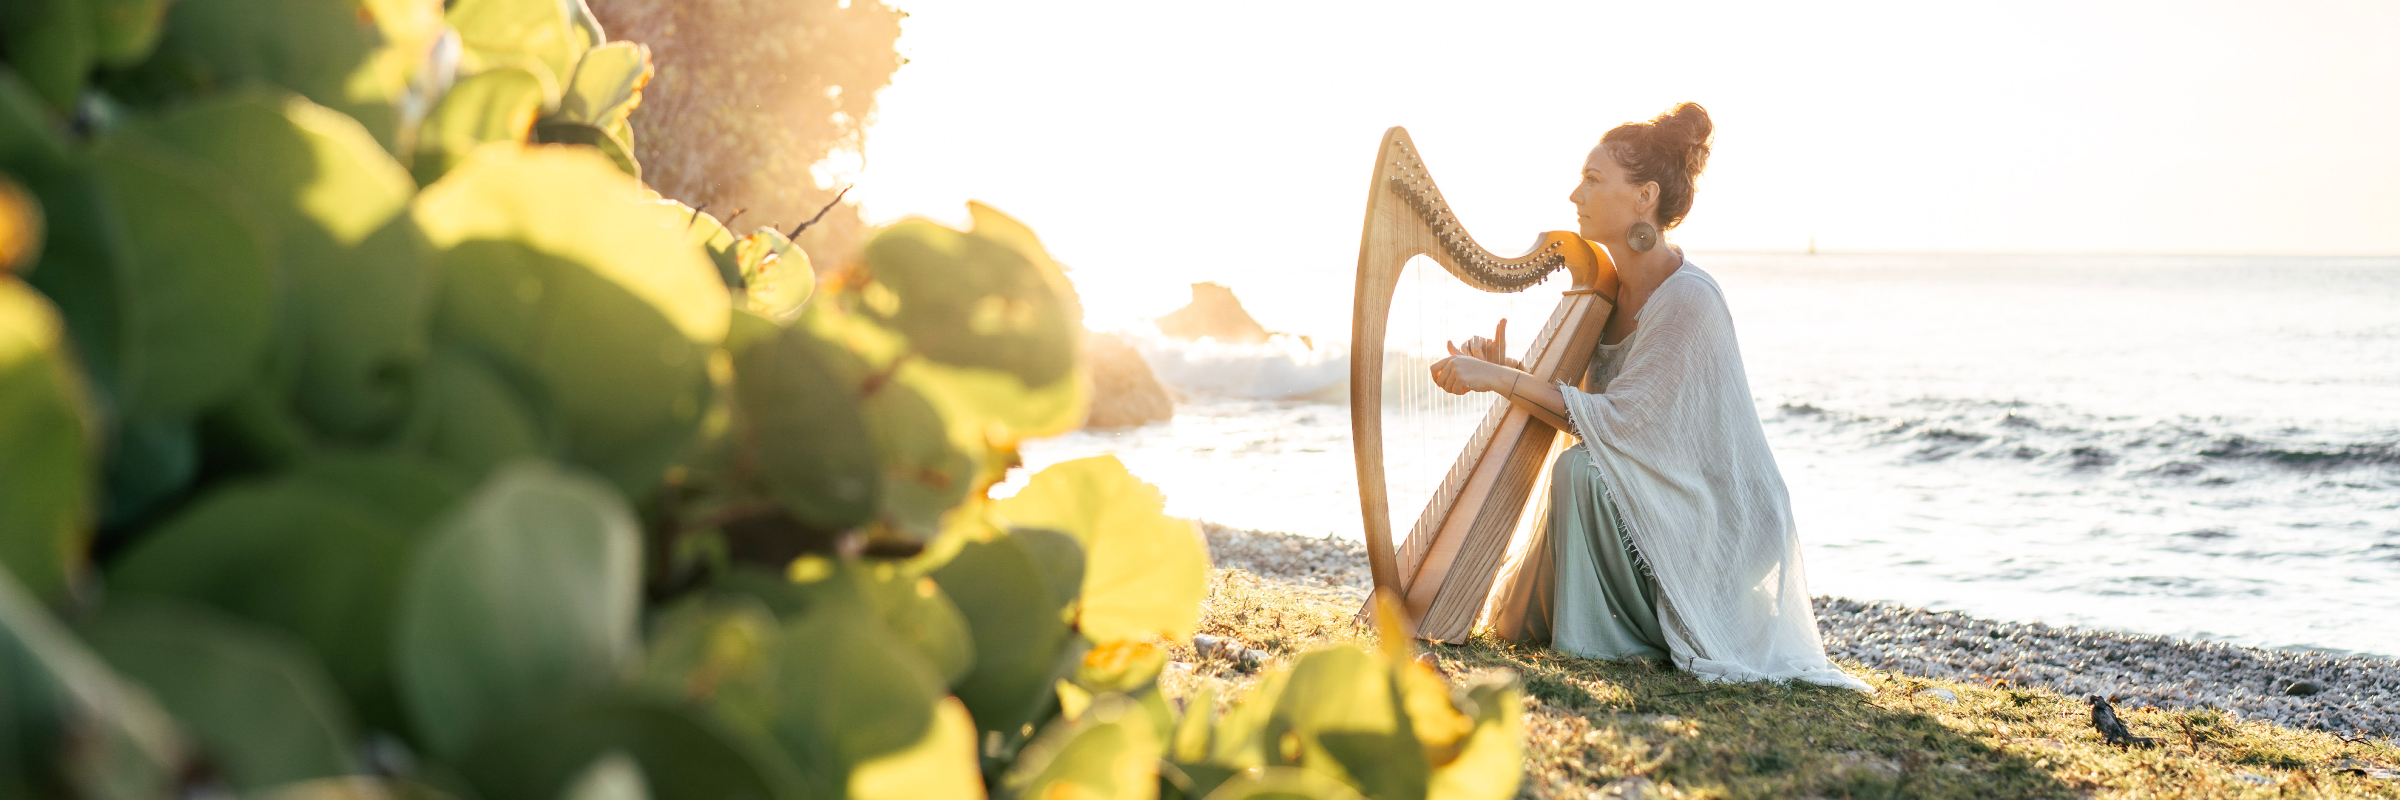 Violaine la harpiste ~ harpe celtique , musicien Musique Irlandaise en représentation à Finistère - photo de couverture n° 1